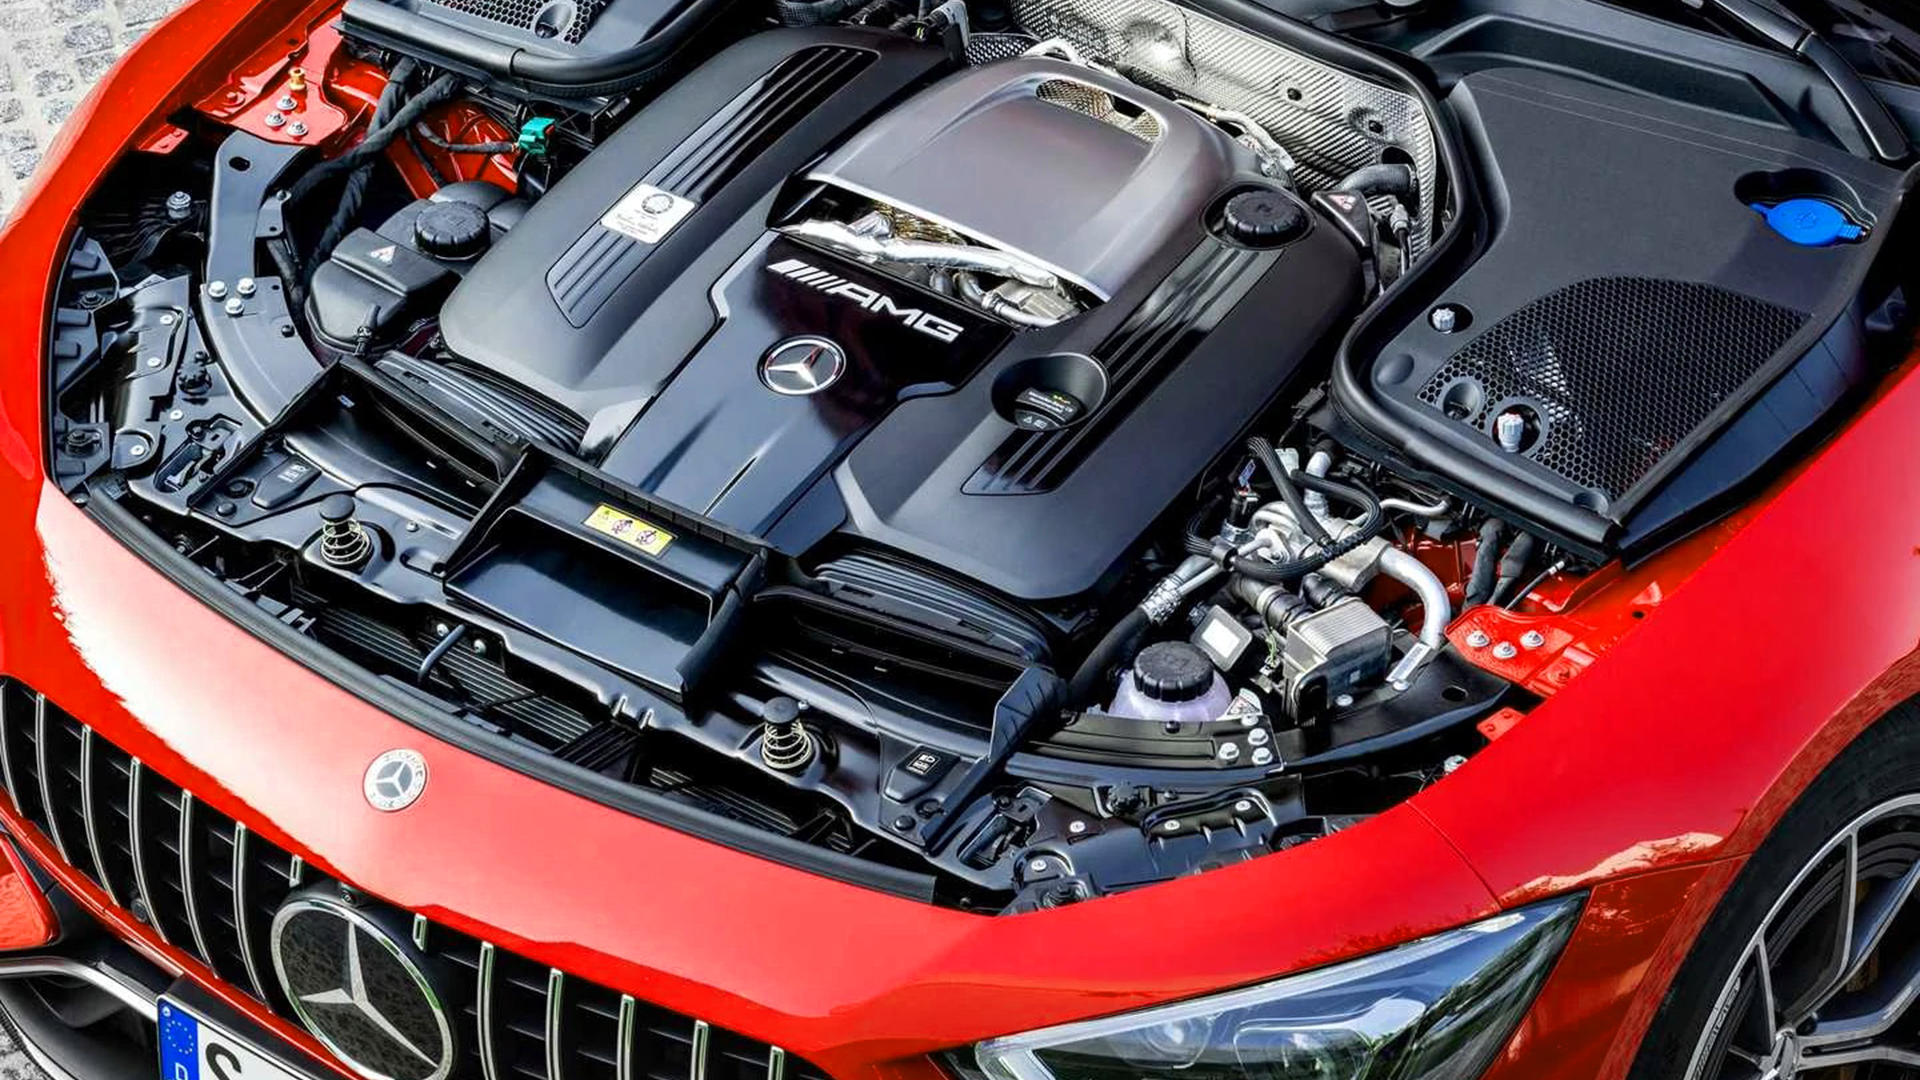 El motor V8 de Mercedes podría seguir fabricándose a pedido. Es una ecuación compleja y muy costosa solo para algunos clientes, o una máscara para ocultar que apuestan por los e-fuels